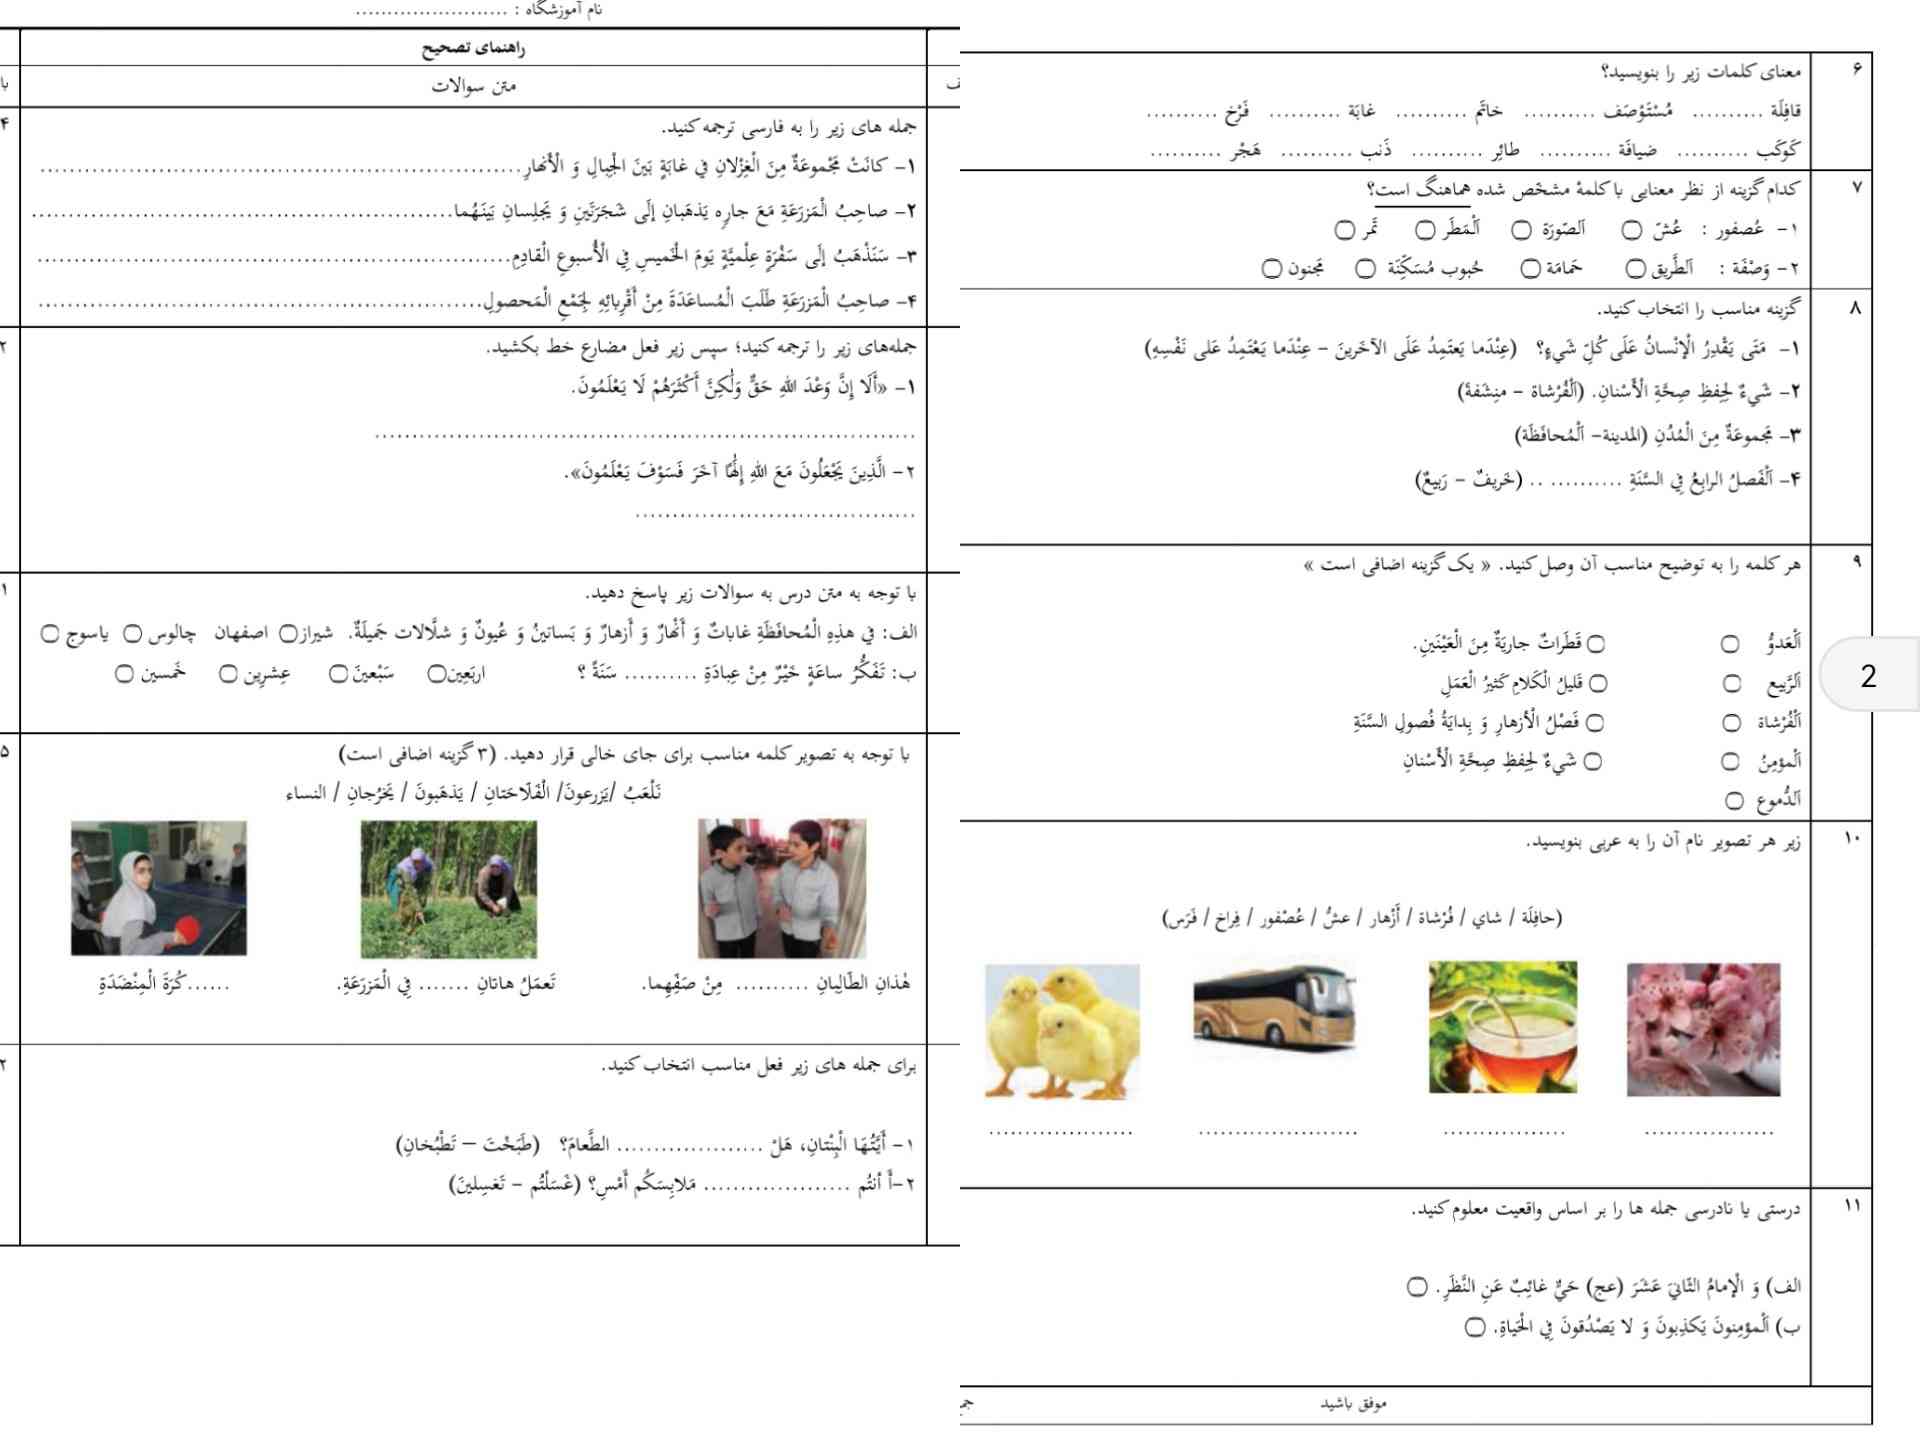 سلام دوستان ، کسی میتونه این دوتا صفحه عربیو حل کنه؟🌻توی شاد میتونین بفرستین @itrxora تاج میدم + یچیزی ک بخوای🦋ممنون میشم.